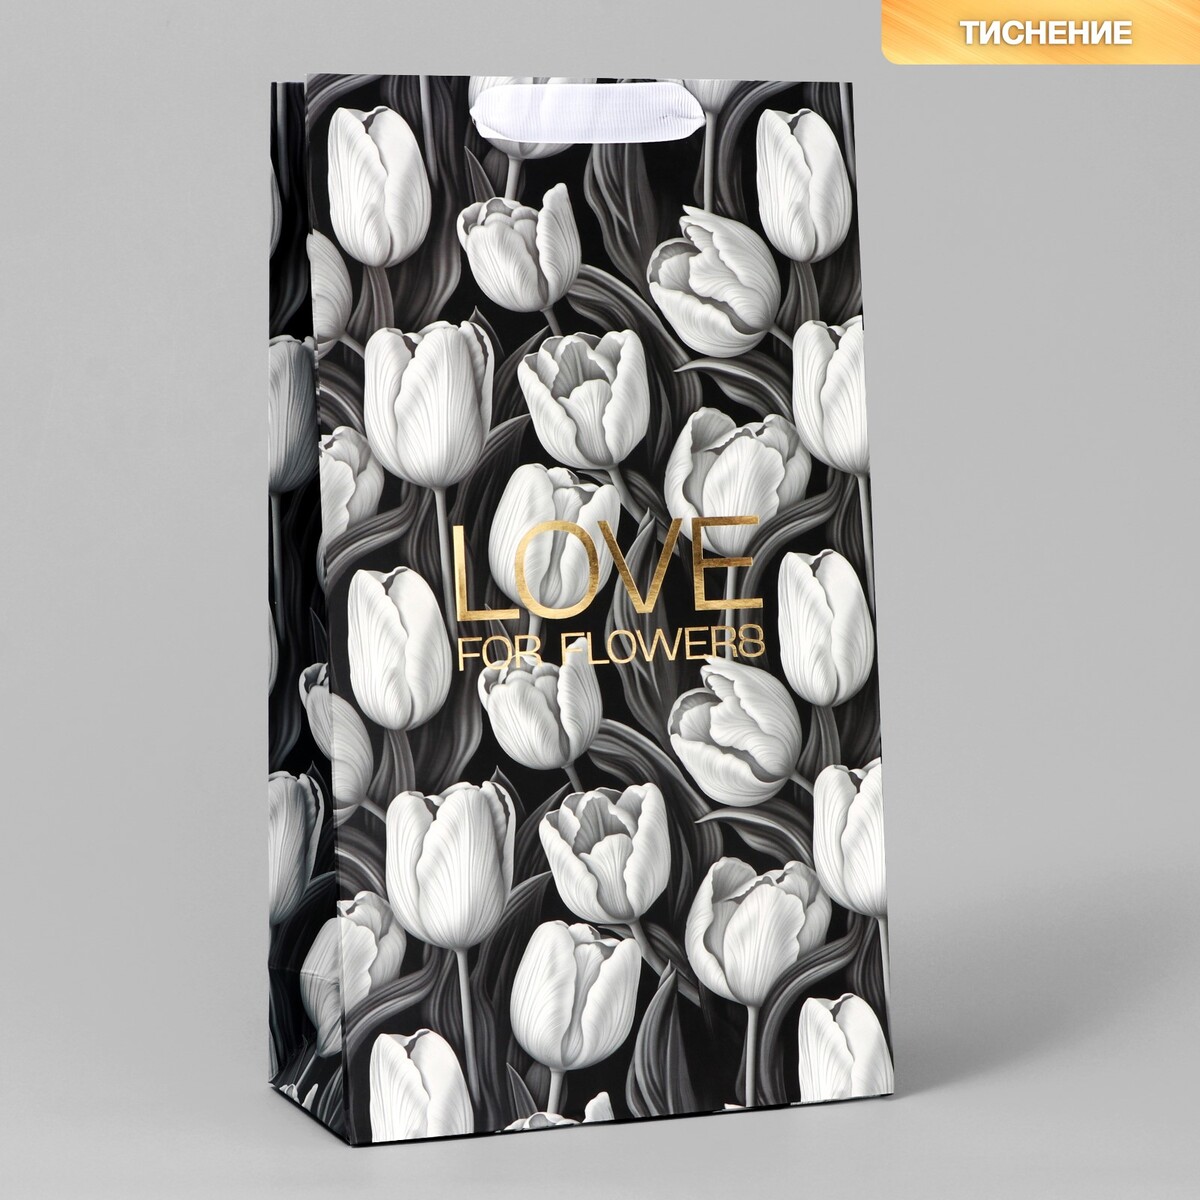 Пакет под две бутылки tulip, тиснение, 35 х 20 х 9 см